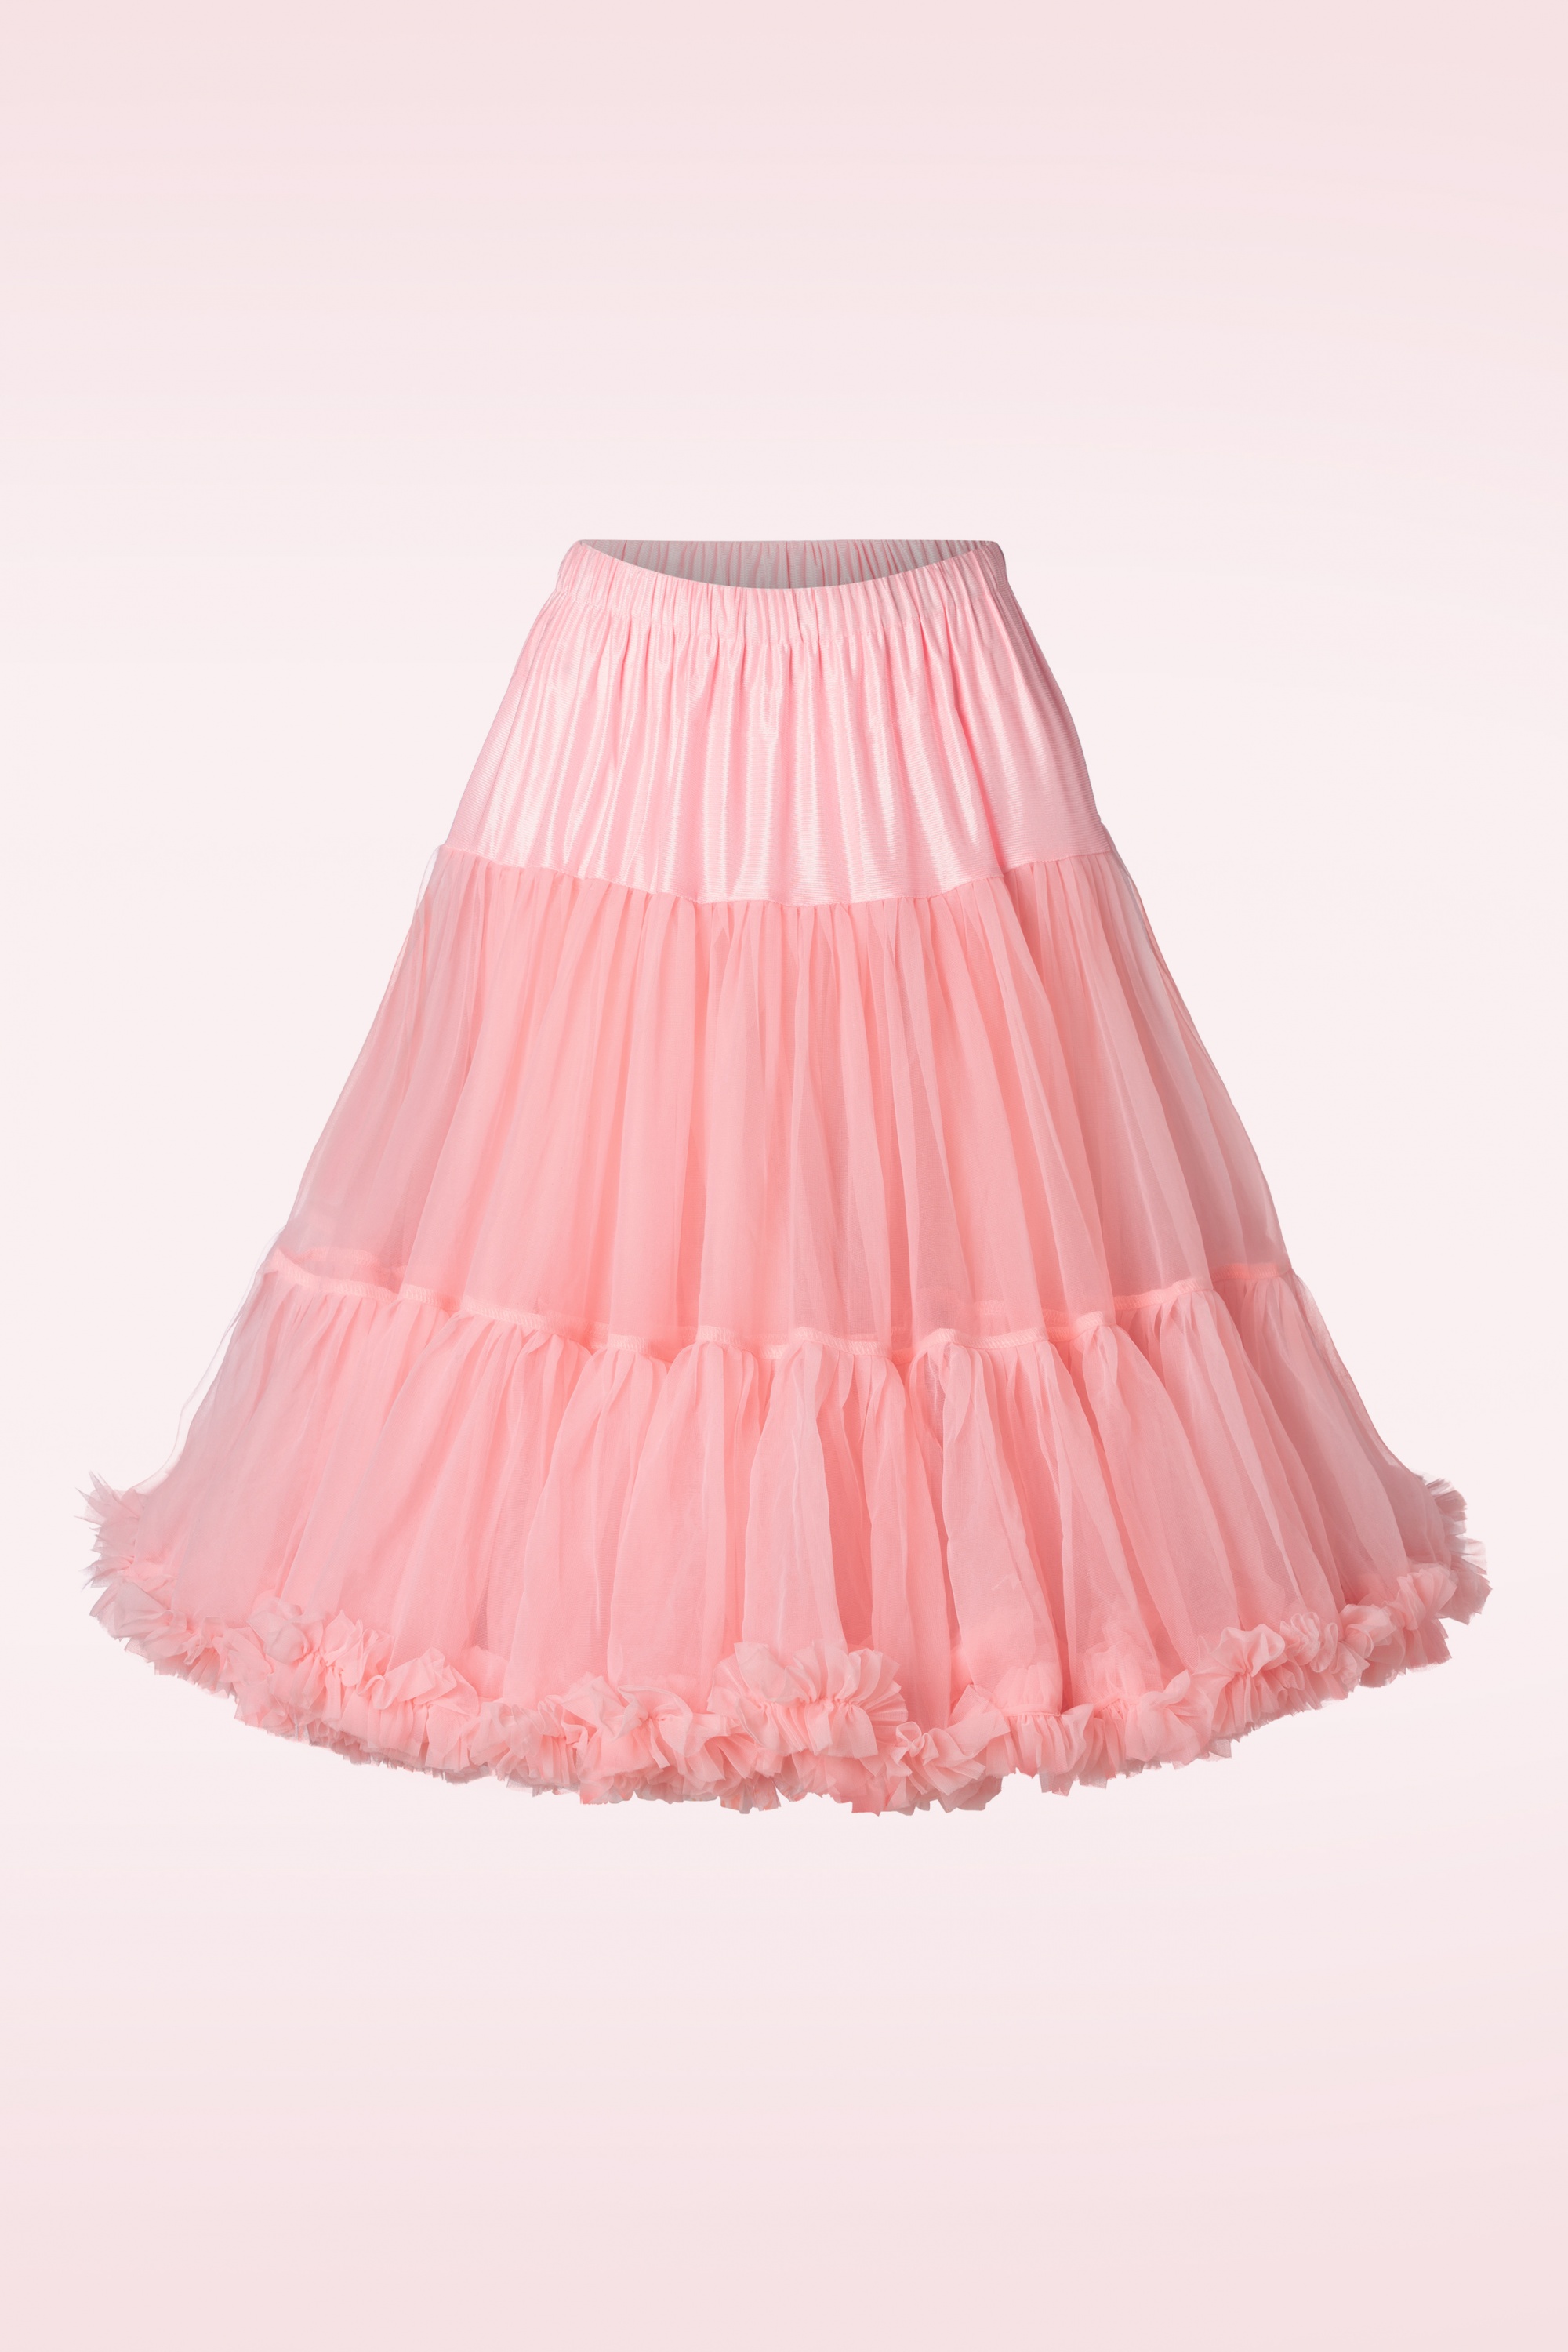 Banned Retro - Lola Lifeforms Petticoat in zalmroze